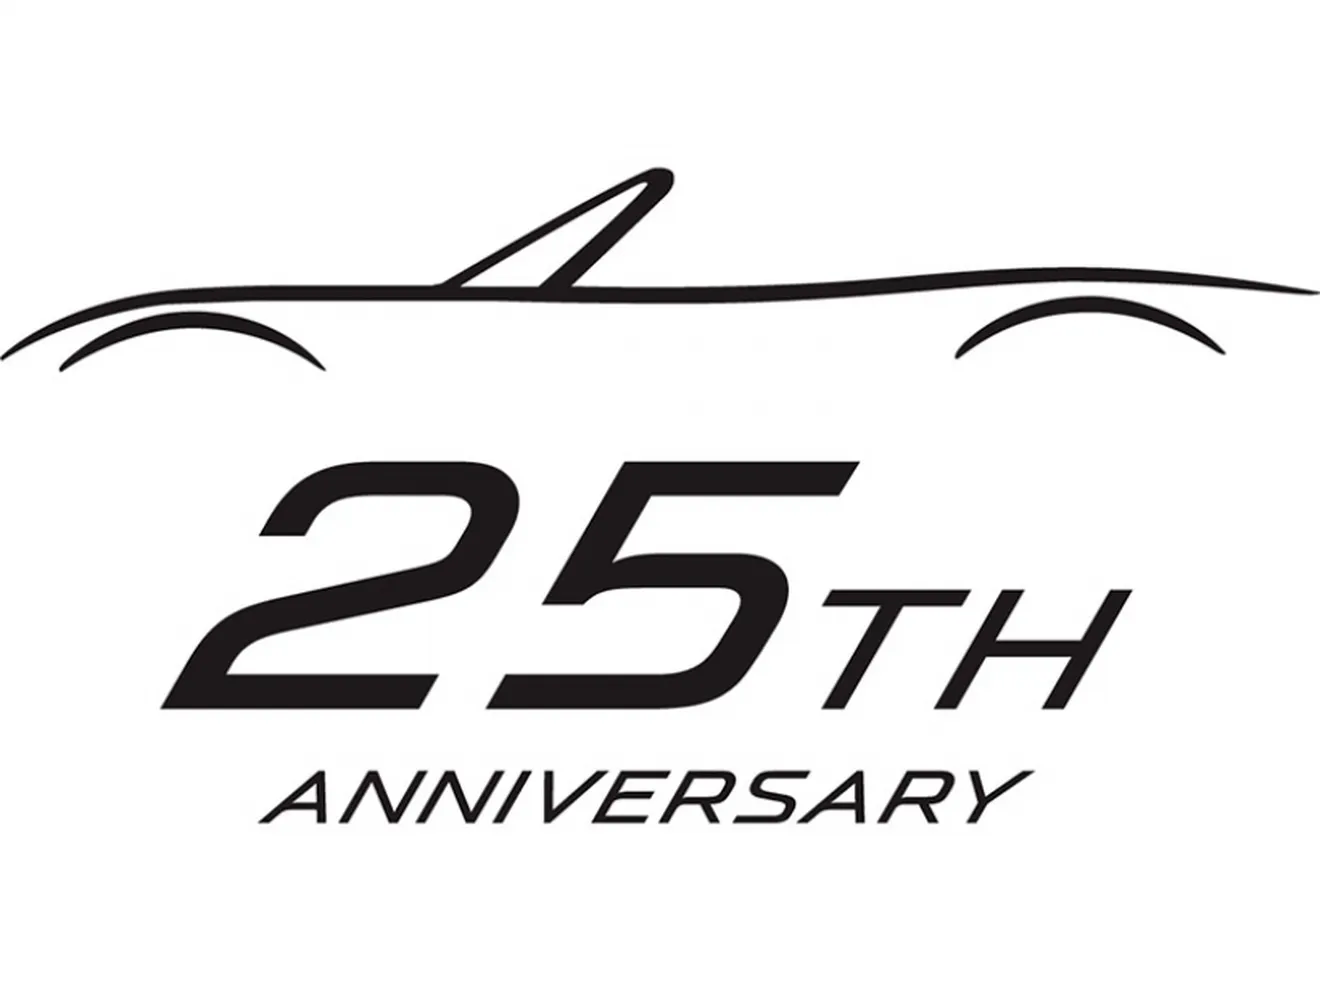 El nuevo Mazda MX-5 se presentará en septiembre en Barcelona.